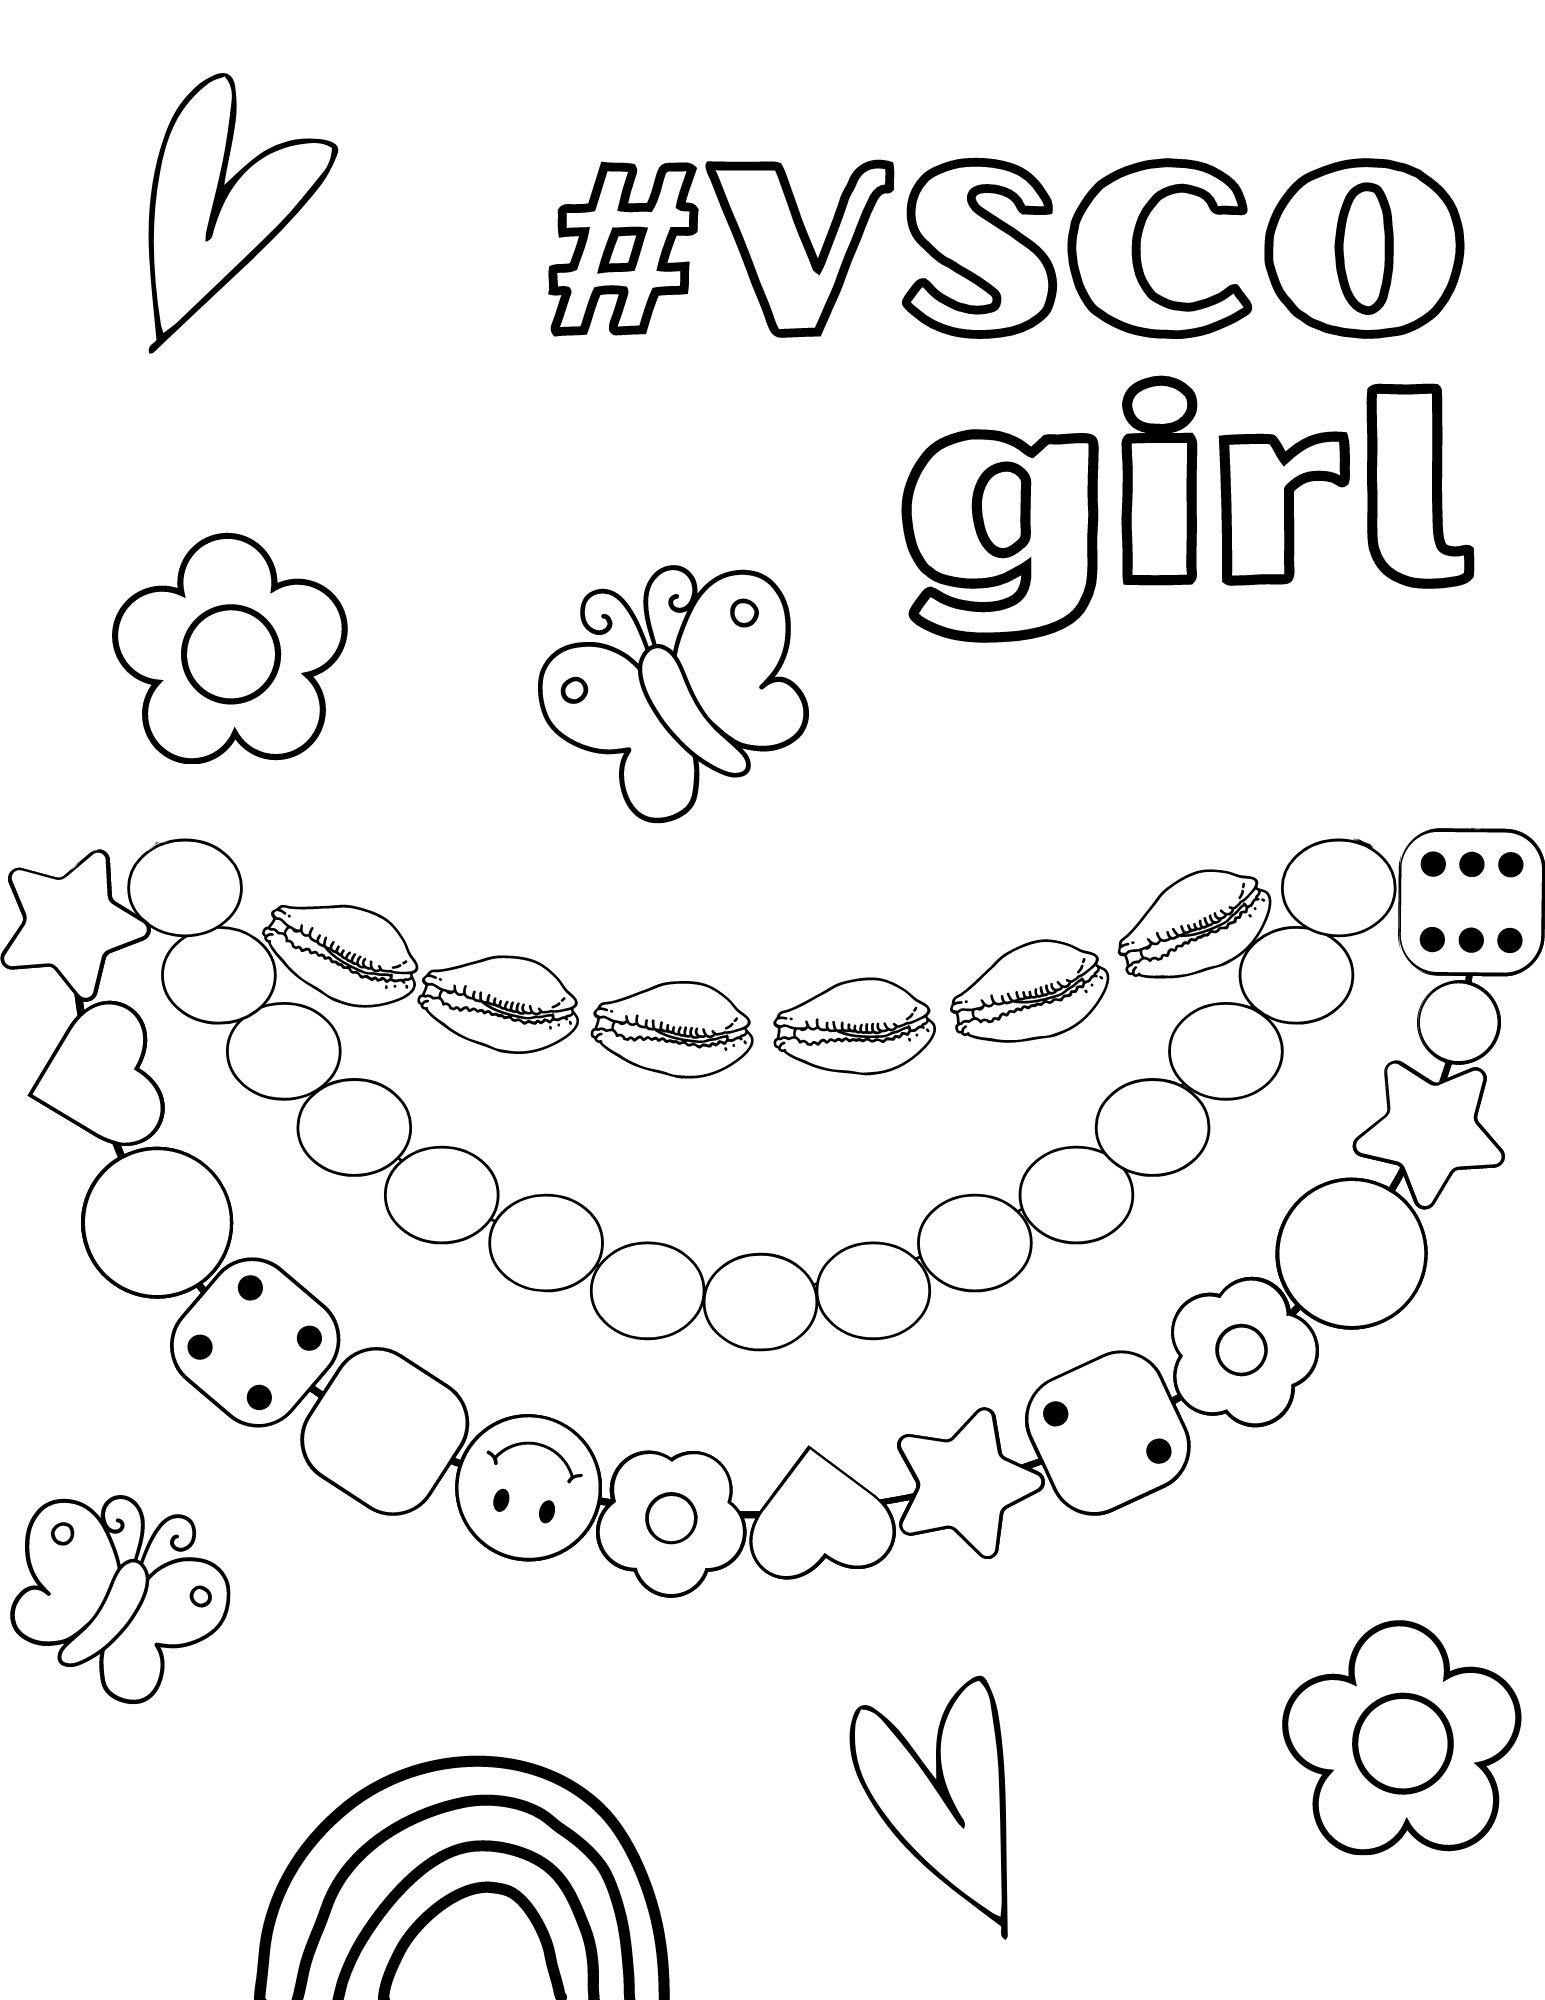 Melhor amiga VSCO Girl para colorir